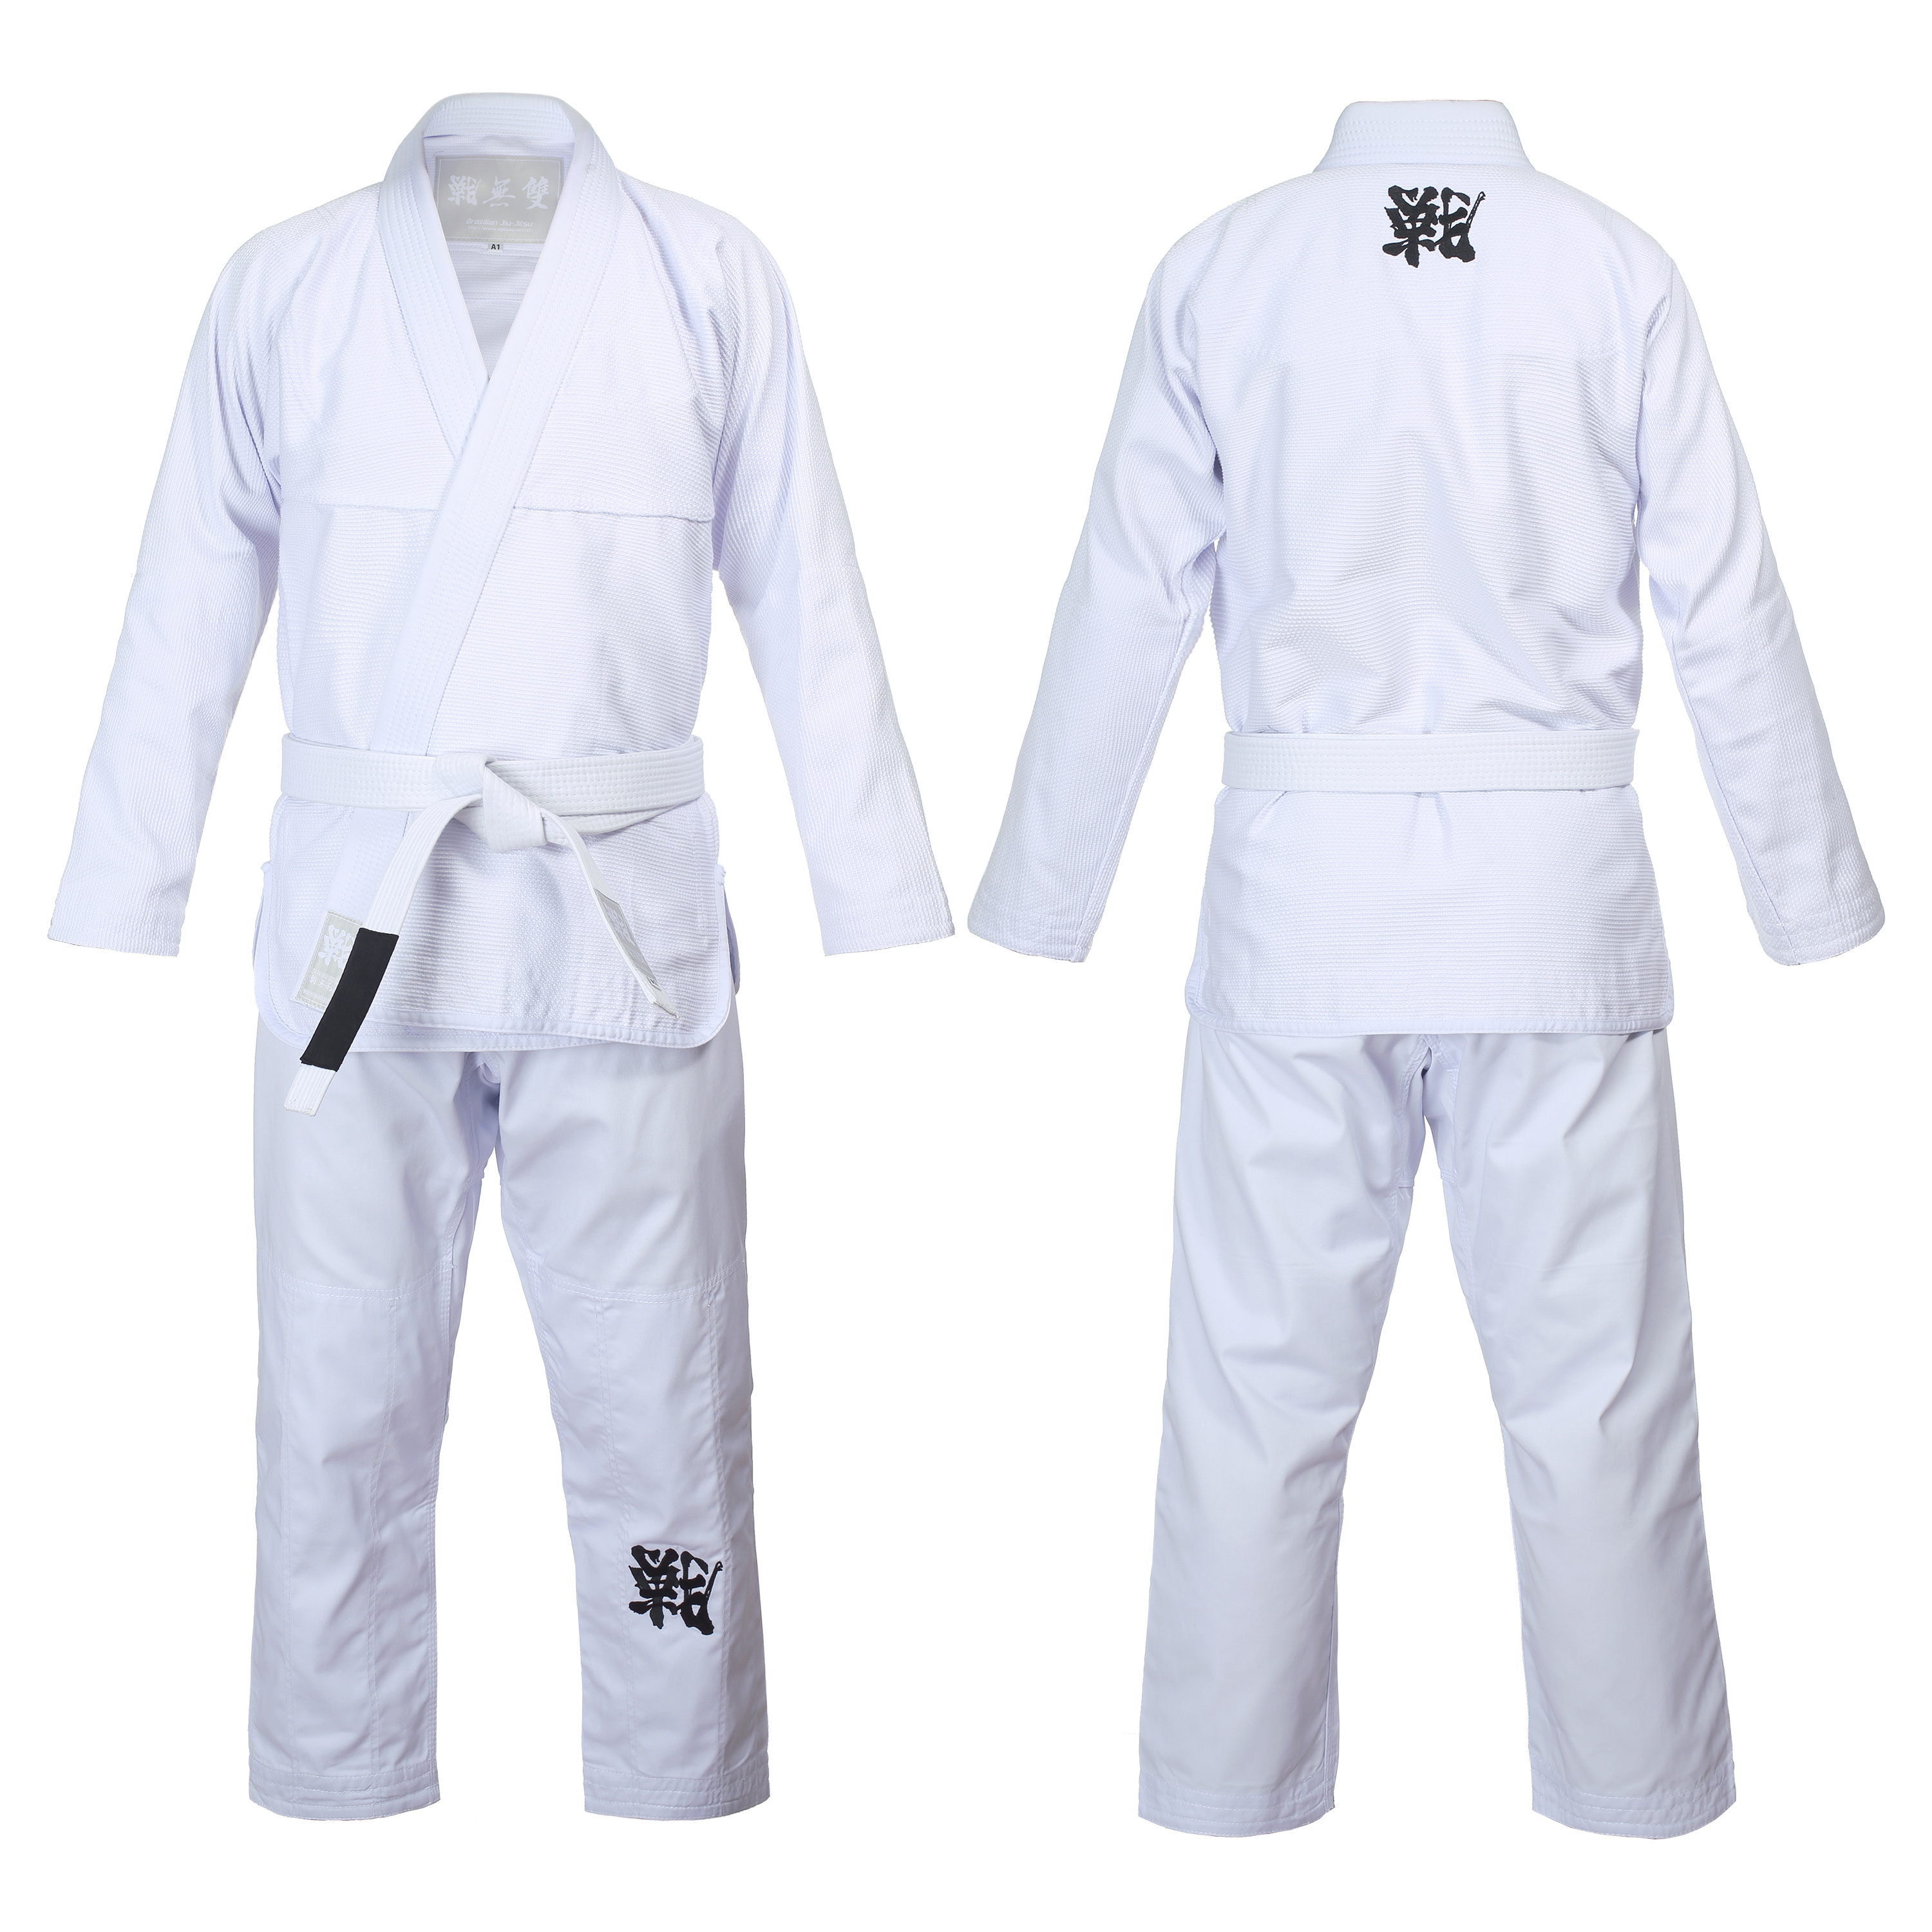 2019 New Product Battle Matchless Basic Novice Competition Training Lightweight Slim BJ Brazilian Jiu-Jitsu Dao Suit